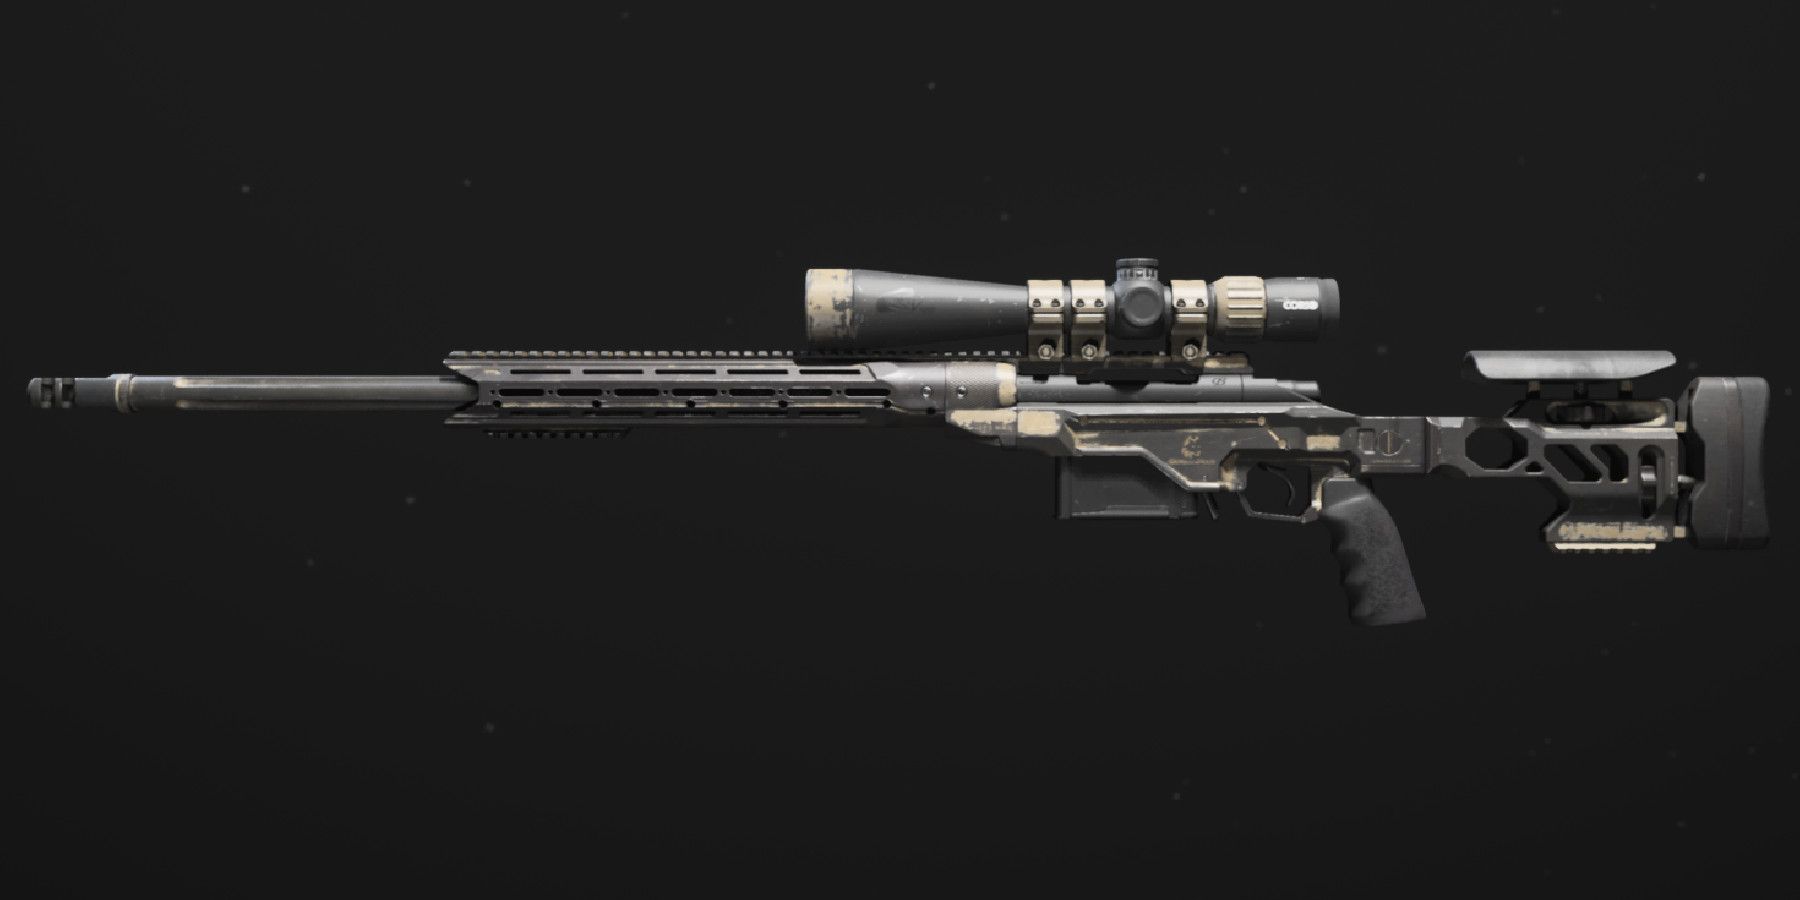 mw3 - weapon camos - sp-x 80